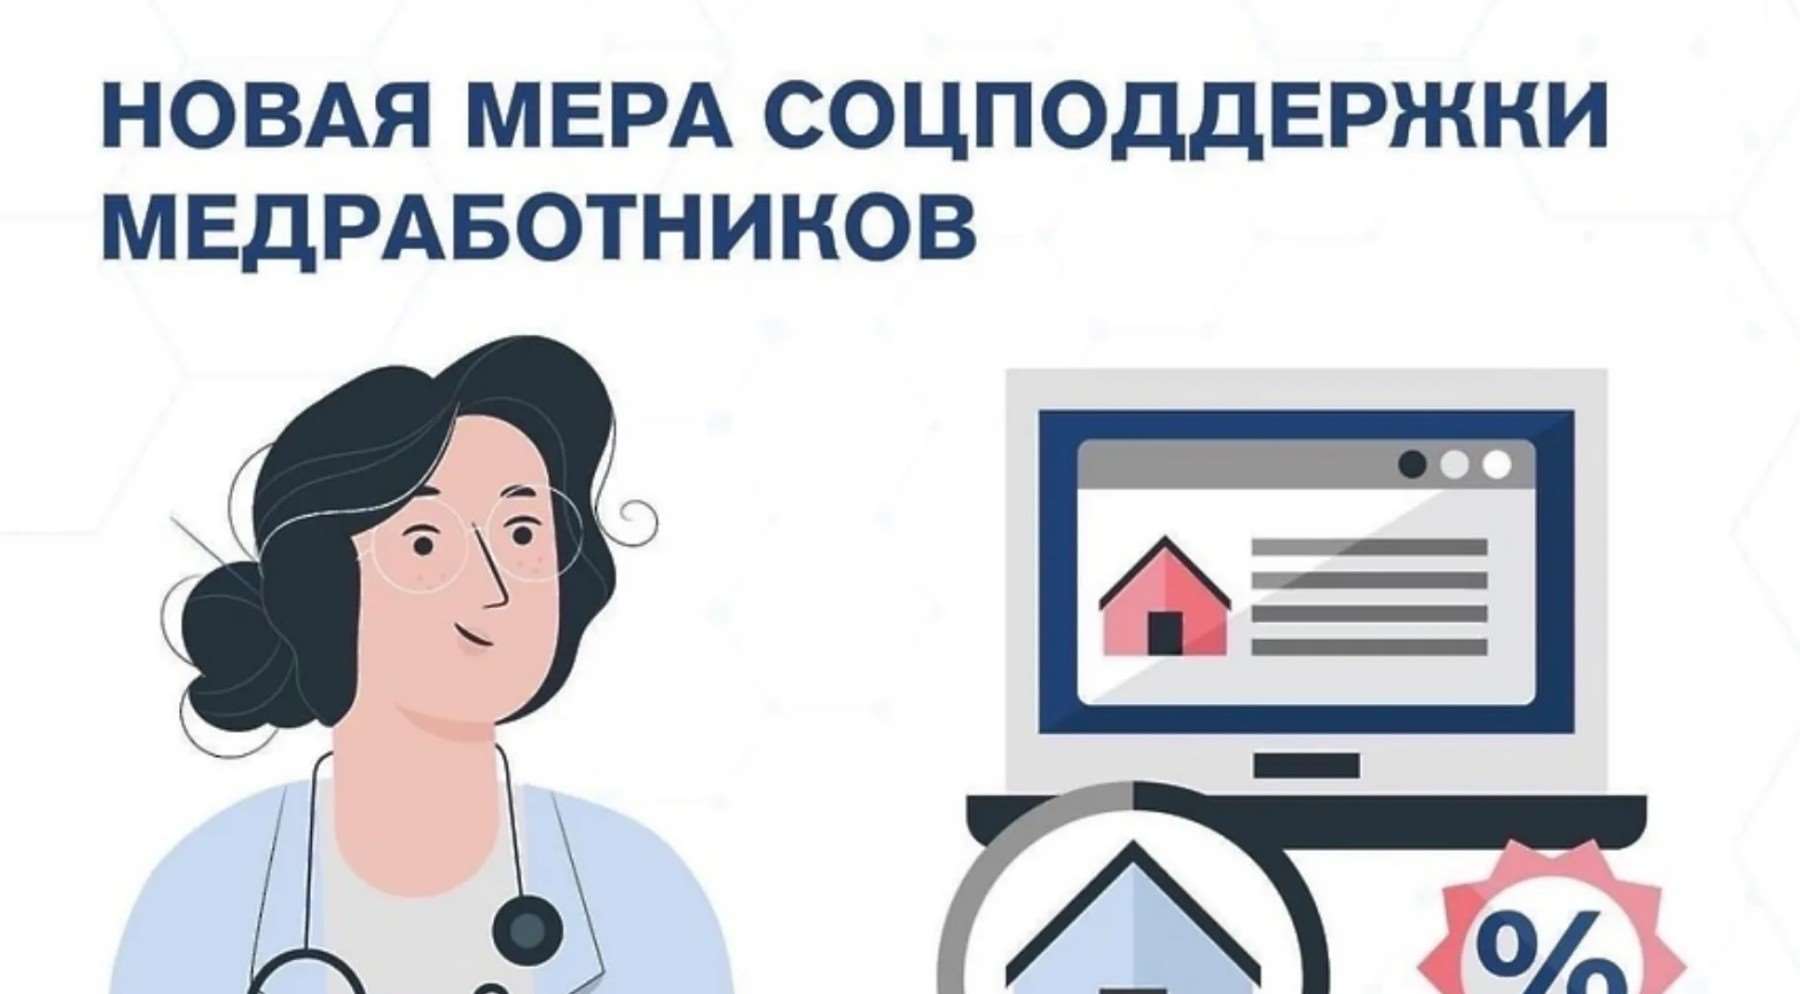 Более 37 тысяч медработников в Санкт-Петербурге и Ленинградской области получают специальные социальные выплаты.